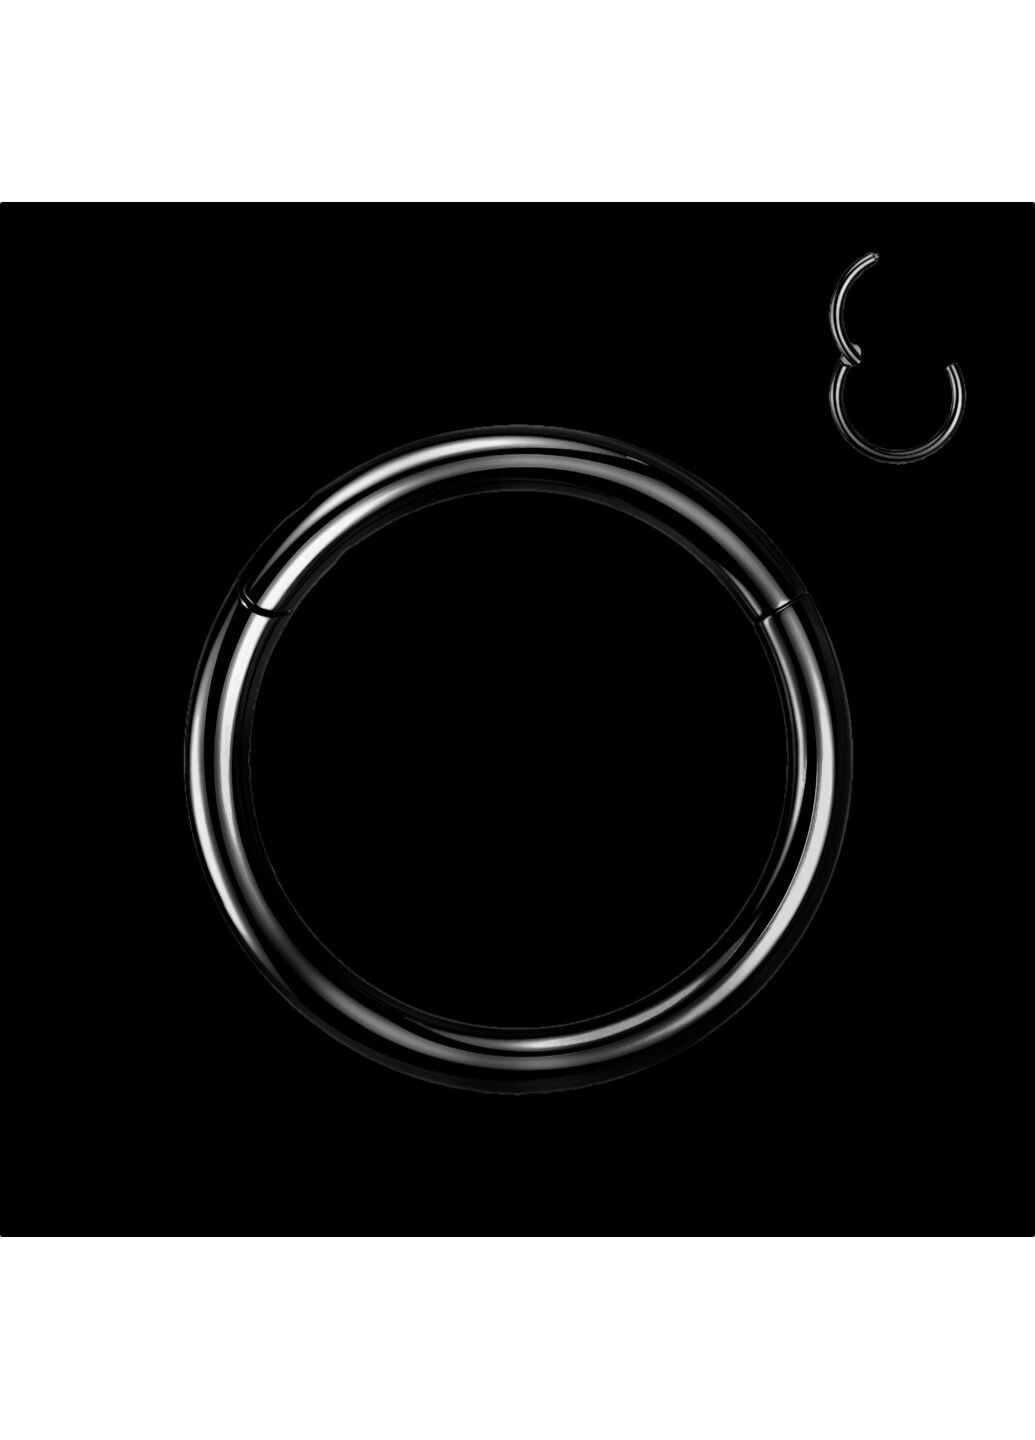 Универсальное кольцо-кликер из титана черного цвета, серьга для пирсинга септума, хряща уха, мочки, брови, носа, соски, пупка Spikes (287337816)